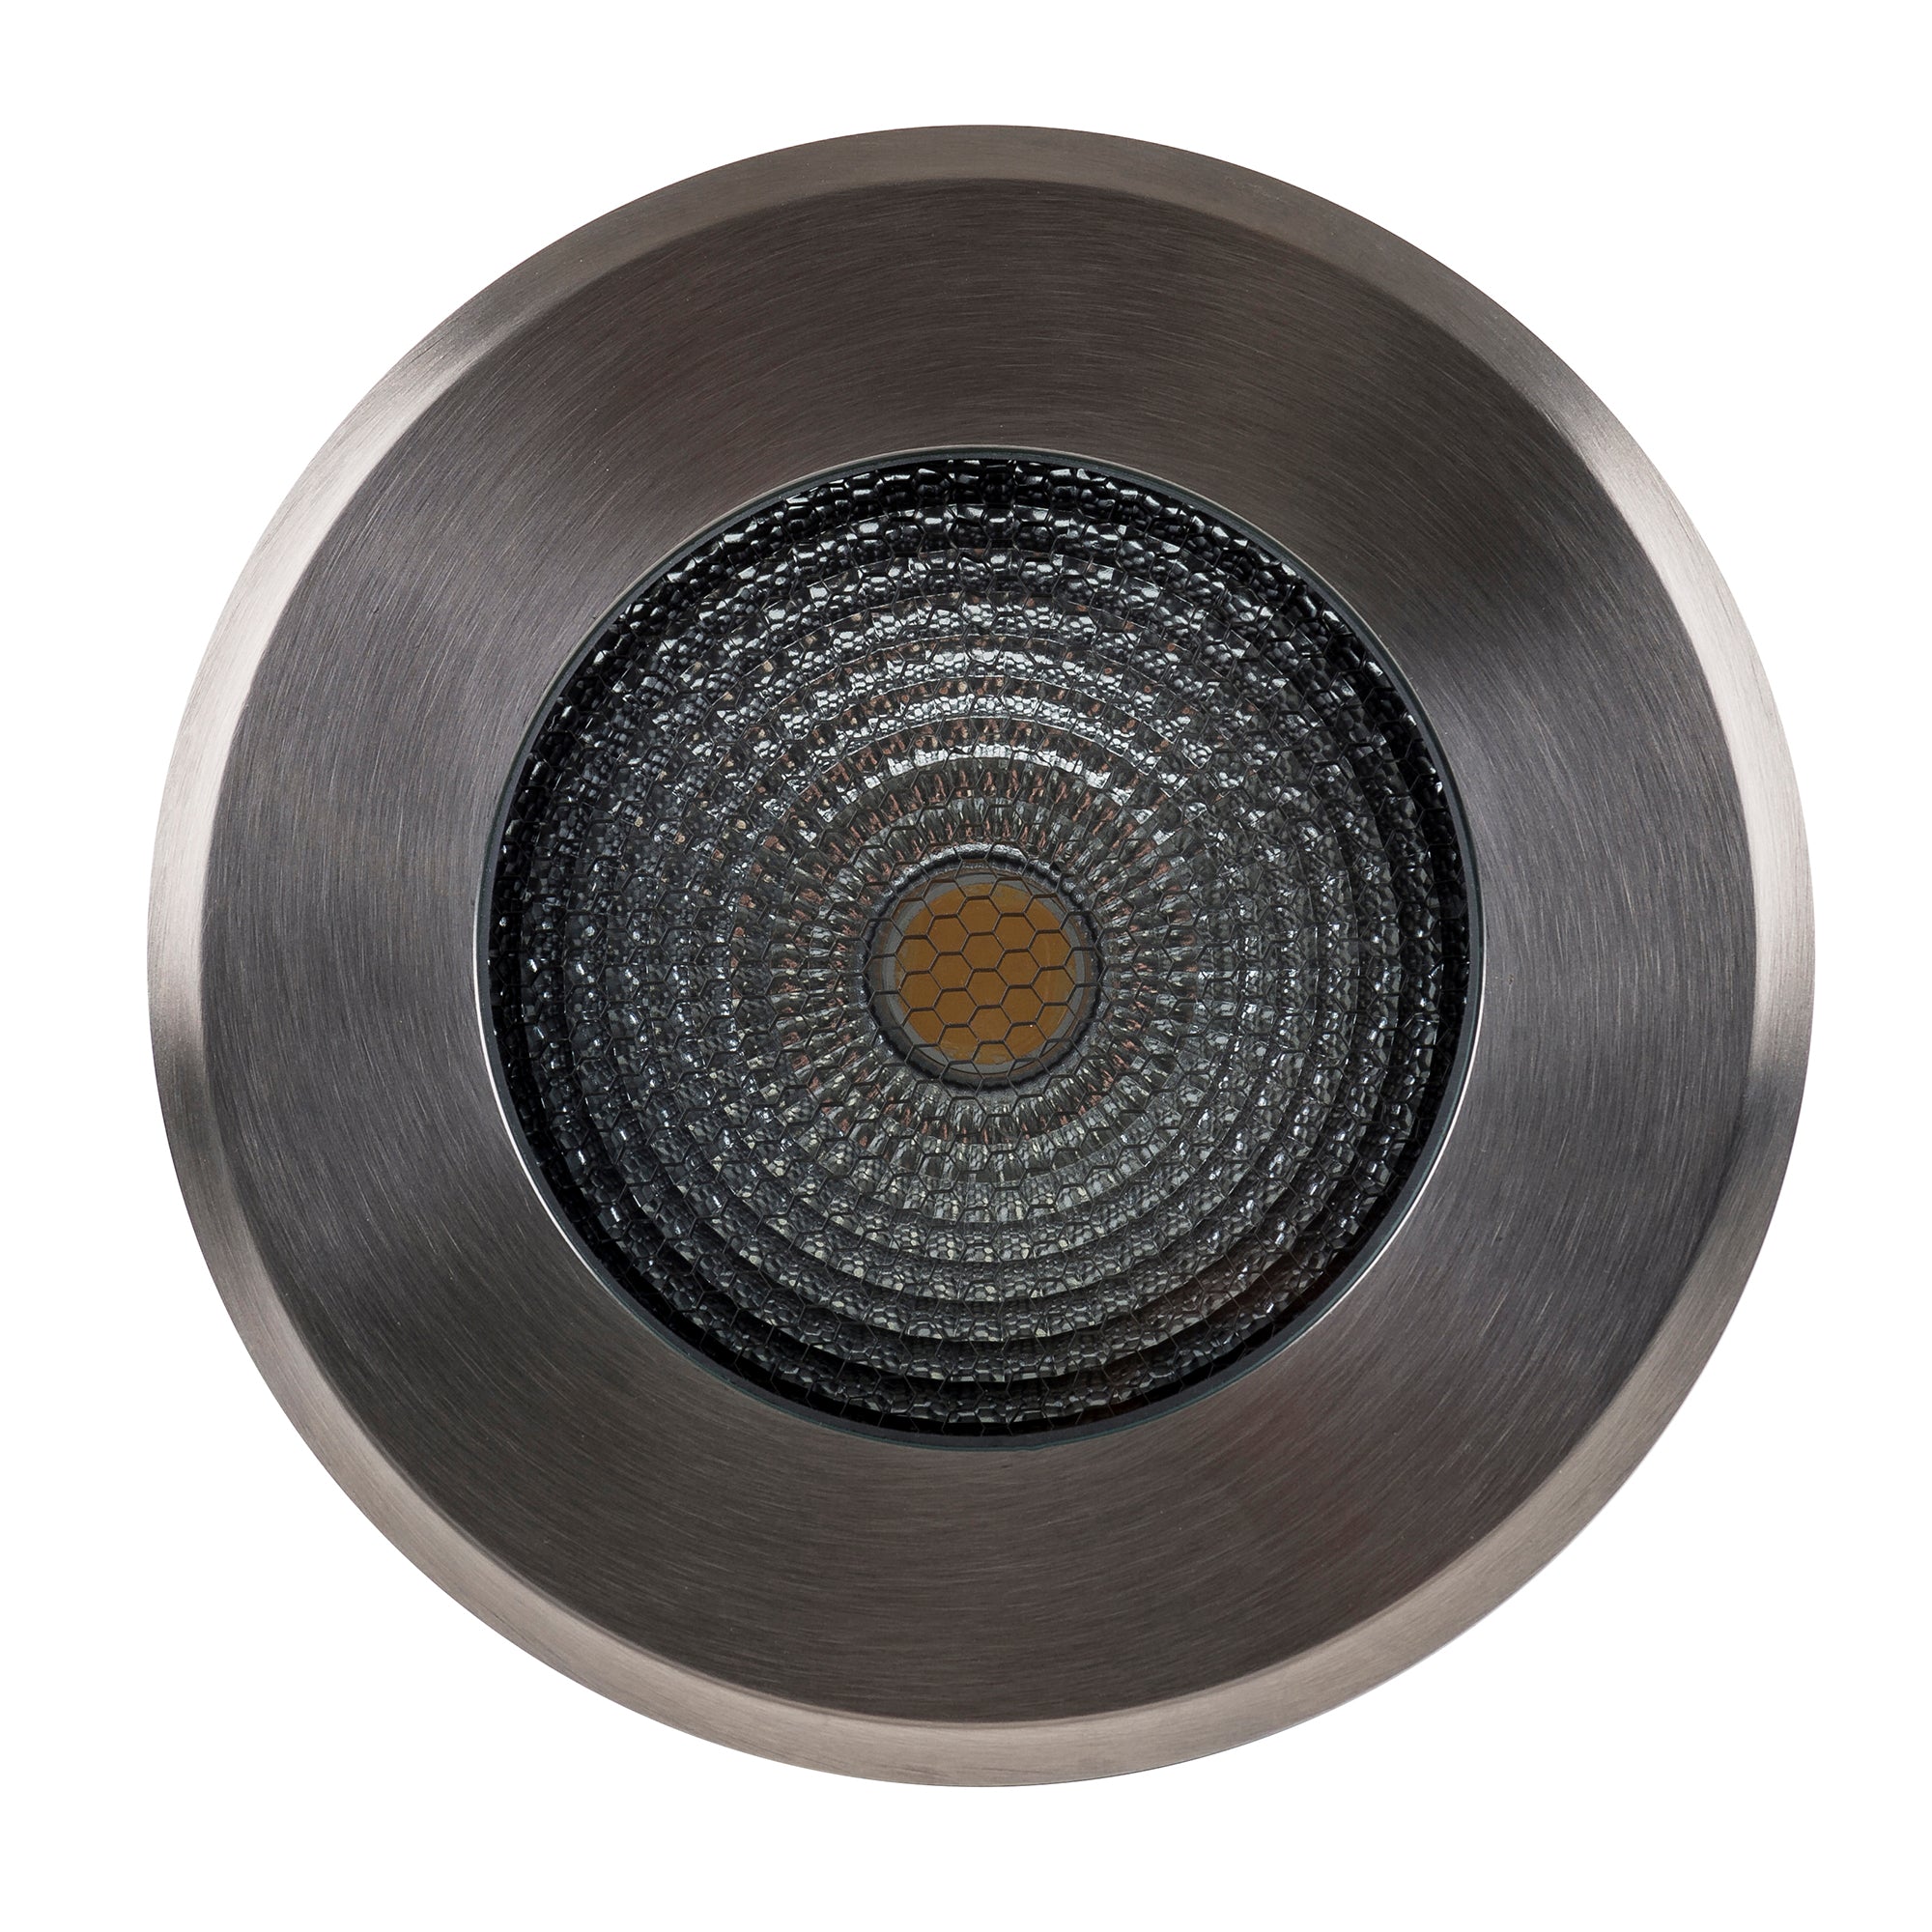 HV1832 - Klip 316 Stainless Steel 10w LED Inground Light